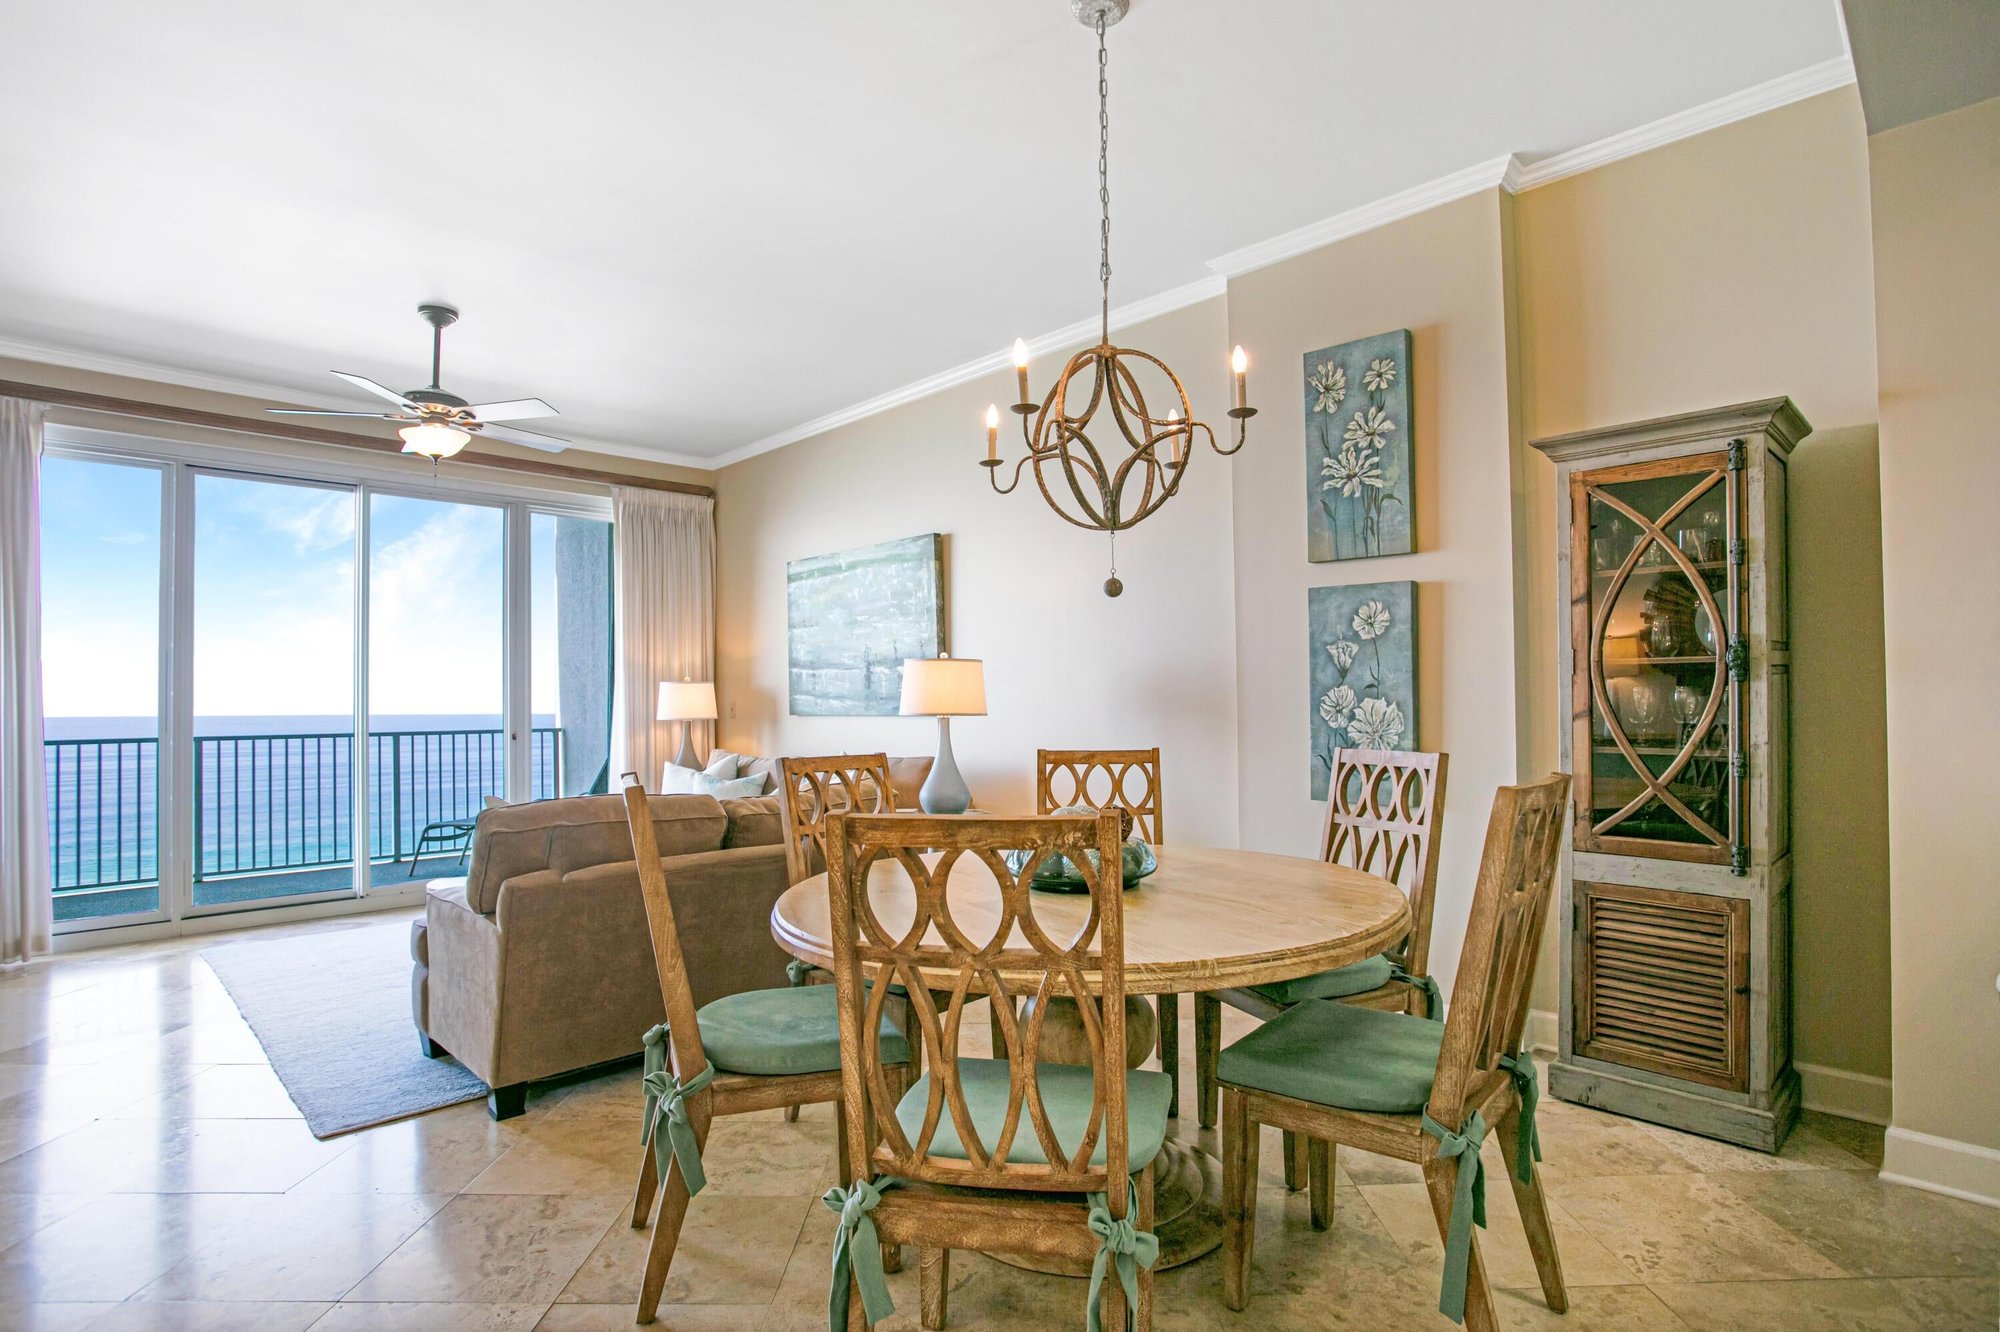 $1M Miramar Beach Real Estate - Home vs Condo